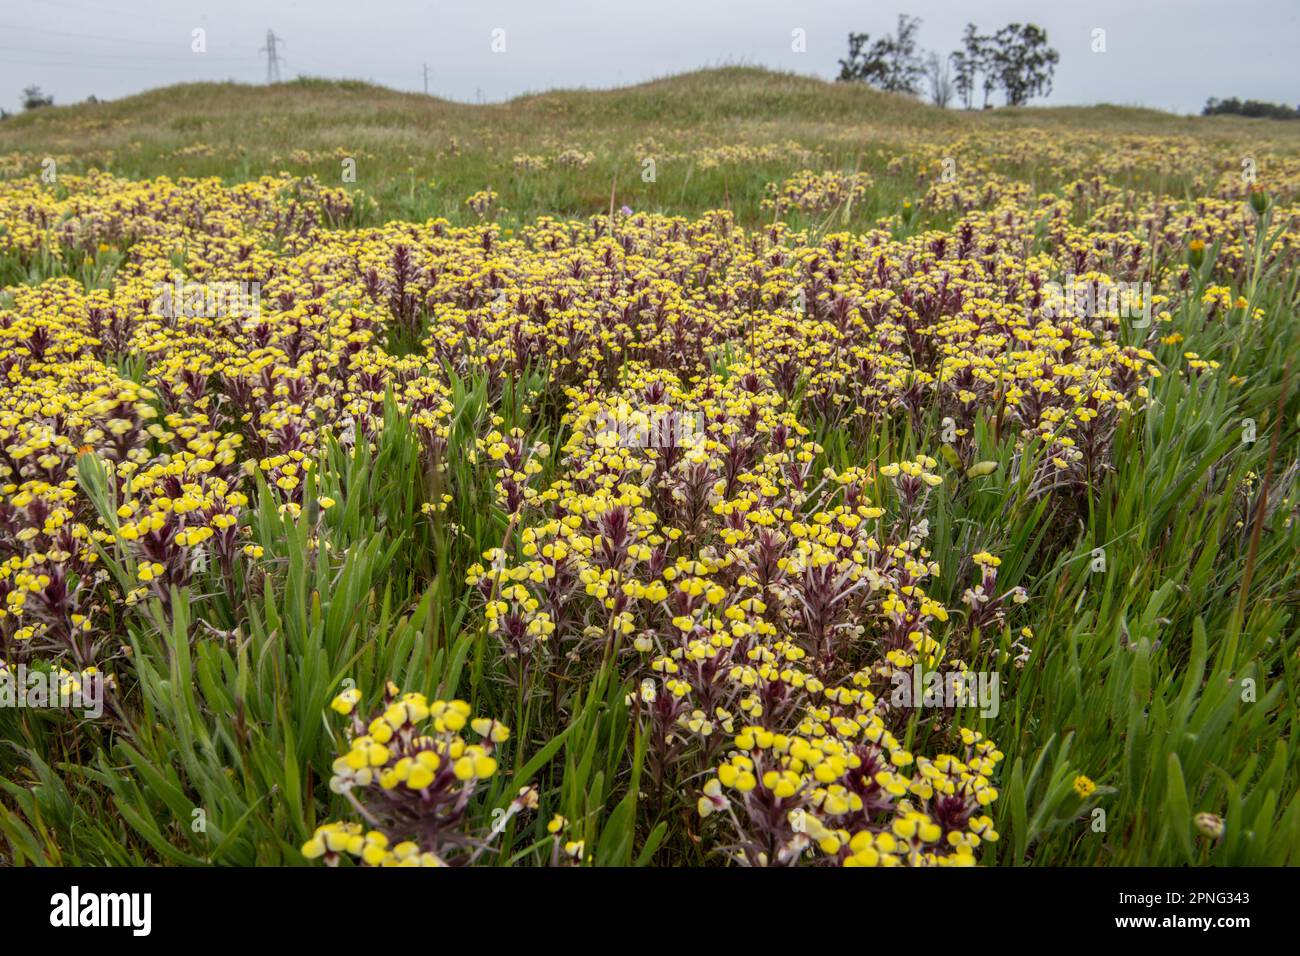 Im Central Valley von Kalifornien erblühende Wildblumen aus dem Vernal Pool. Gelbe johnny Tuck oder Butter und Eierpflanze, Triphysaria eriantha. Stockfoto